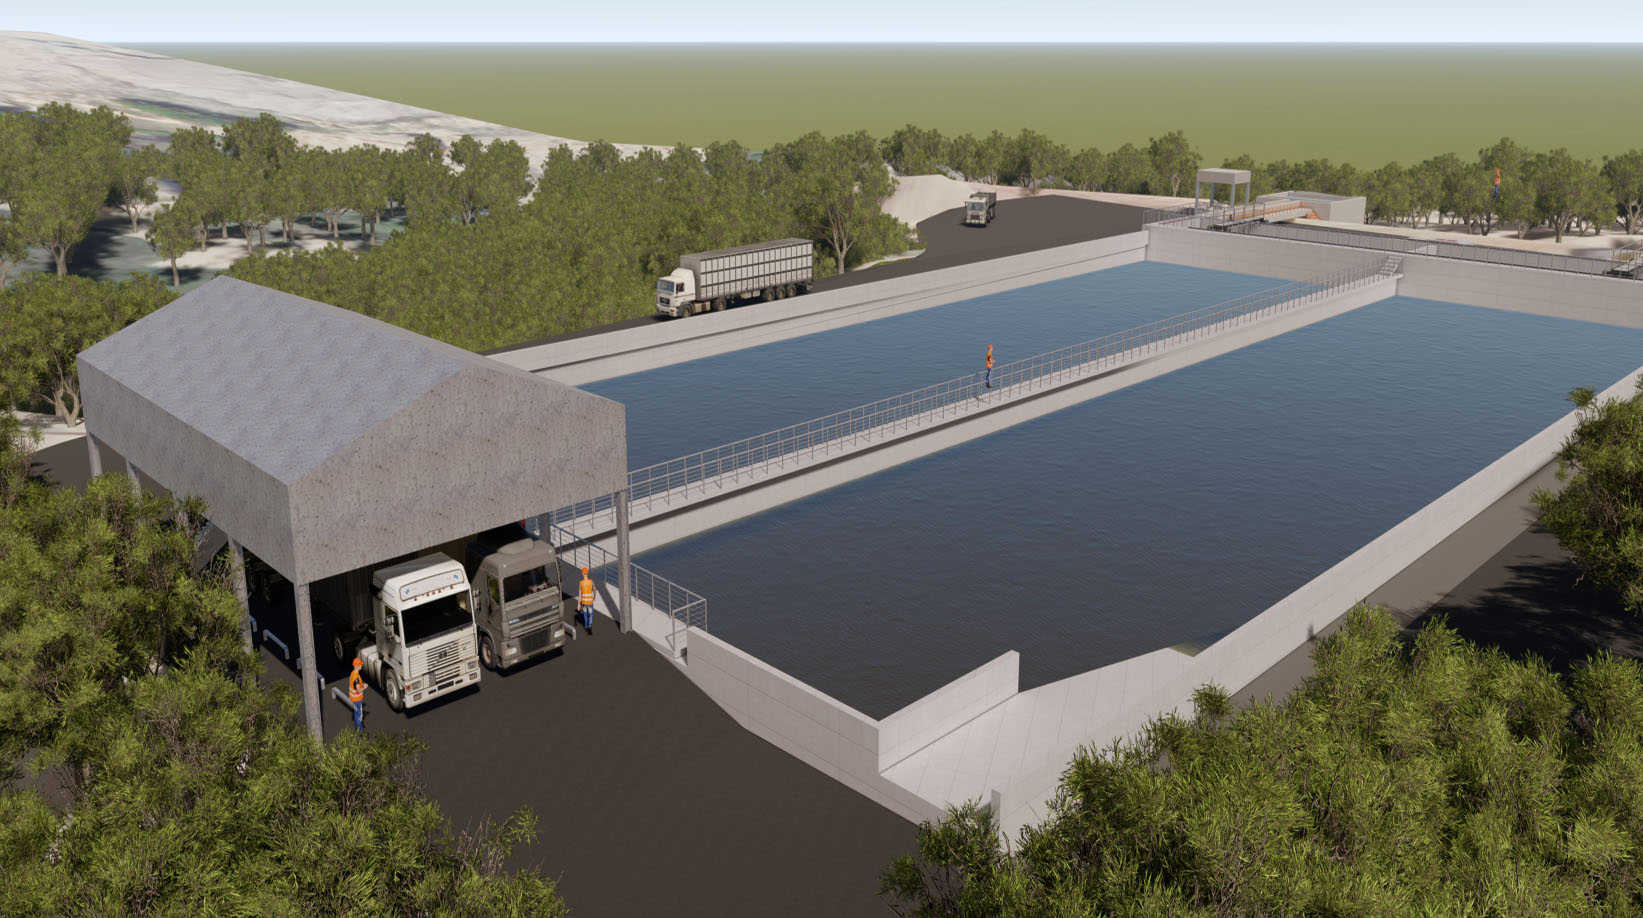 Özka İnşaat Treatment Plant Construction in Seymen Waste Storage Site